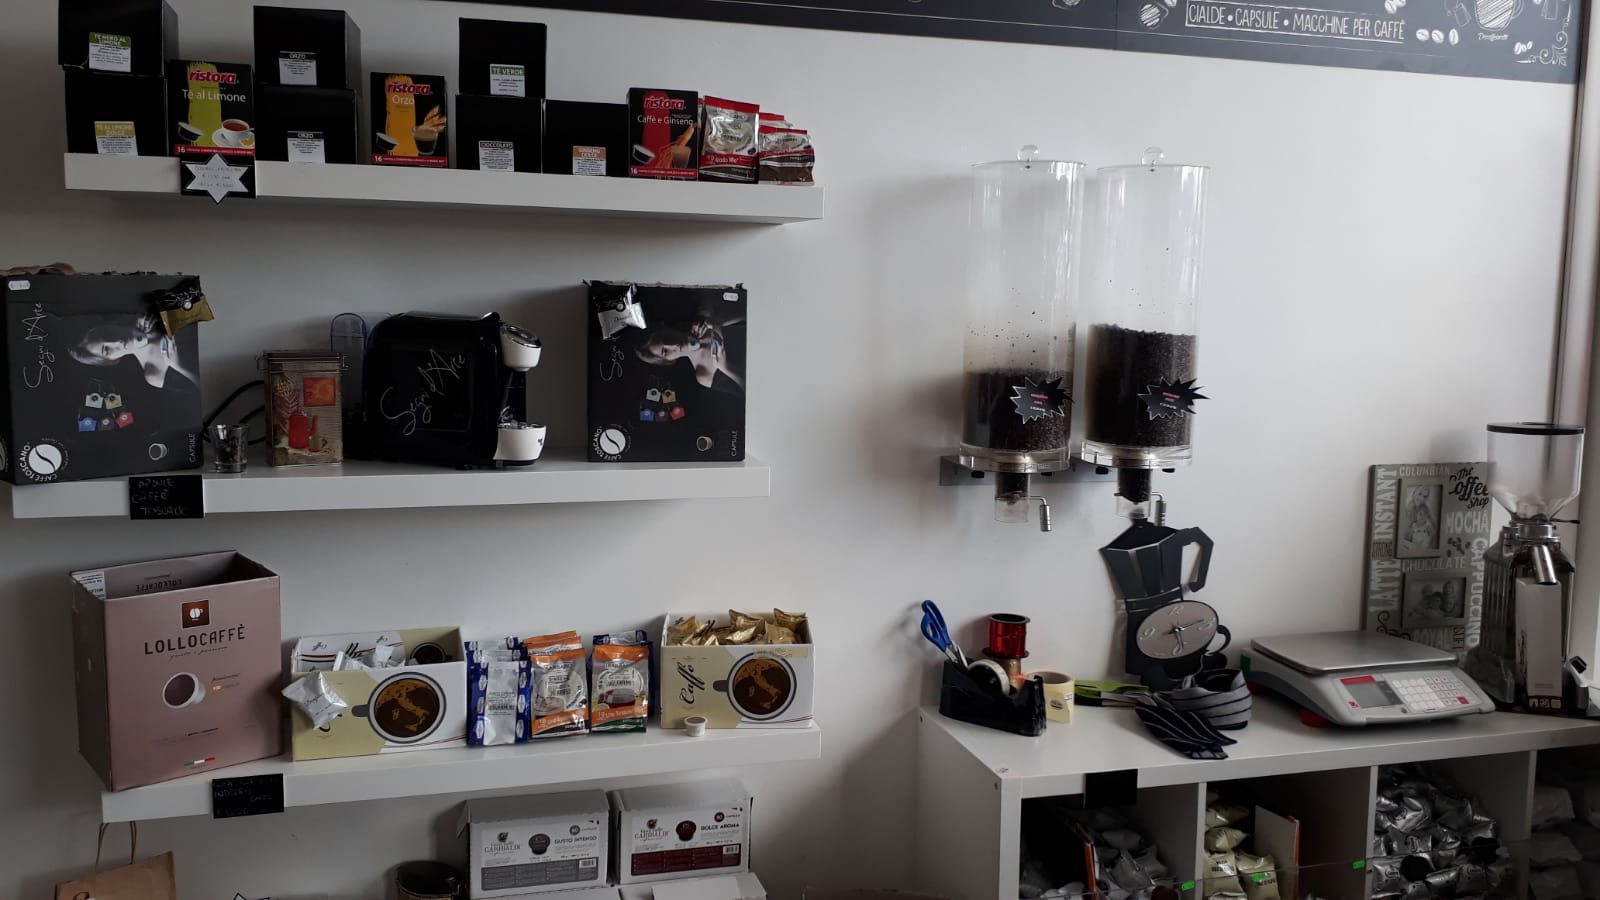 Caffè-Shop-I-nostri-punti-vendita-caffè-in-cialde-e-capsule